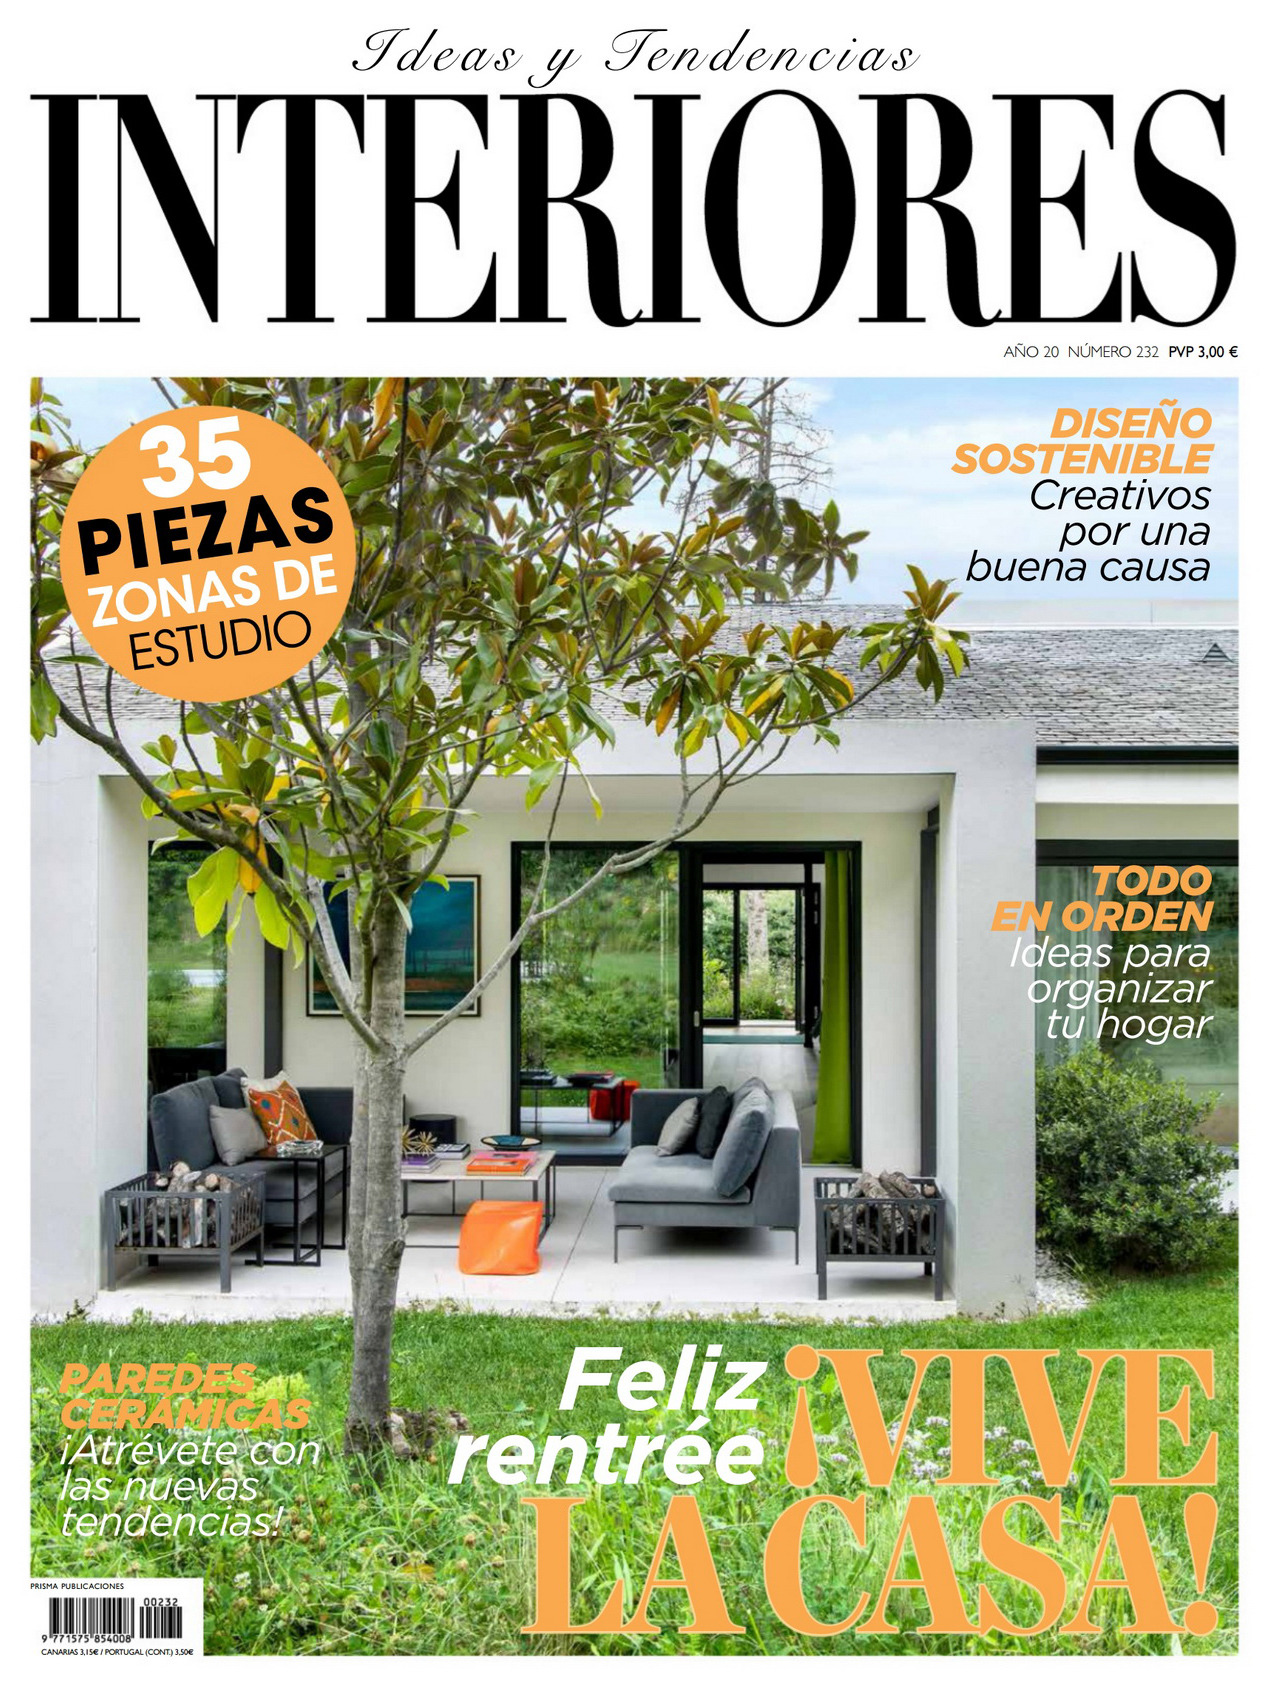 《Interiores》西班牙室内时尚杂志2020年09月号